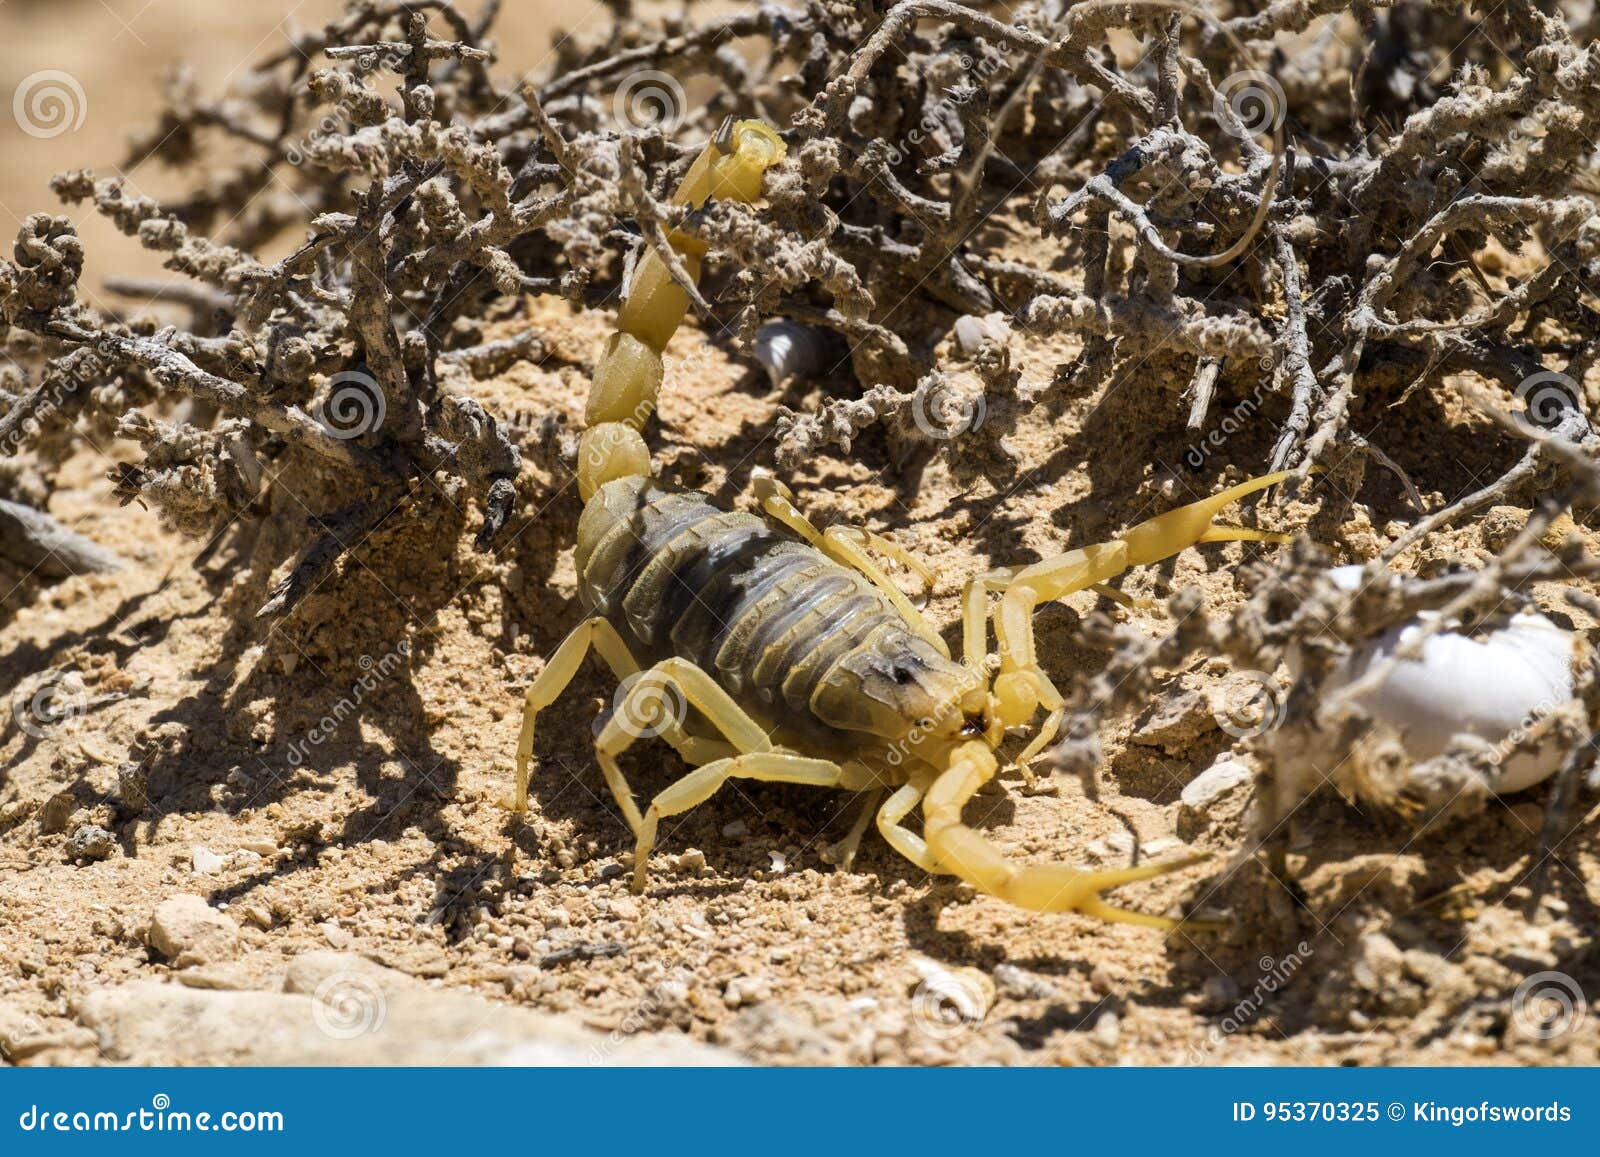 镶边的沙漠蝎子 库存图片. 图片 包括有 有刺的动物, 岩石, 敌意, 沙漠, 本质, 生物, 陆运, 危险 - 9982101